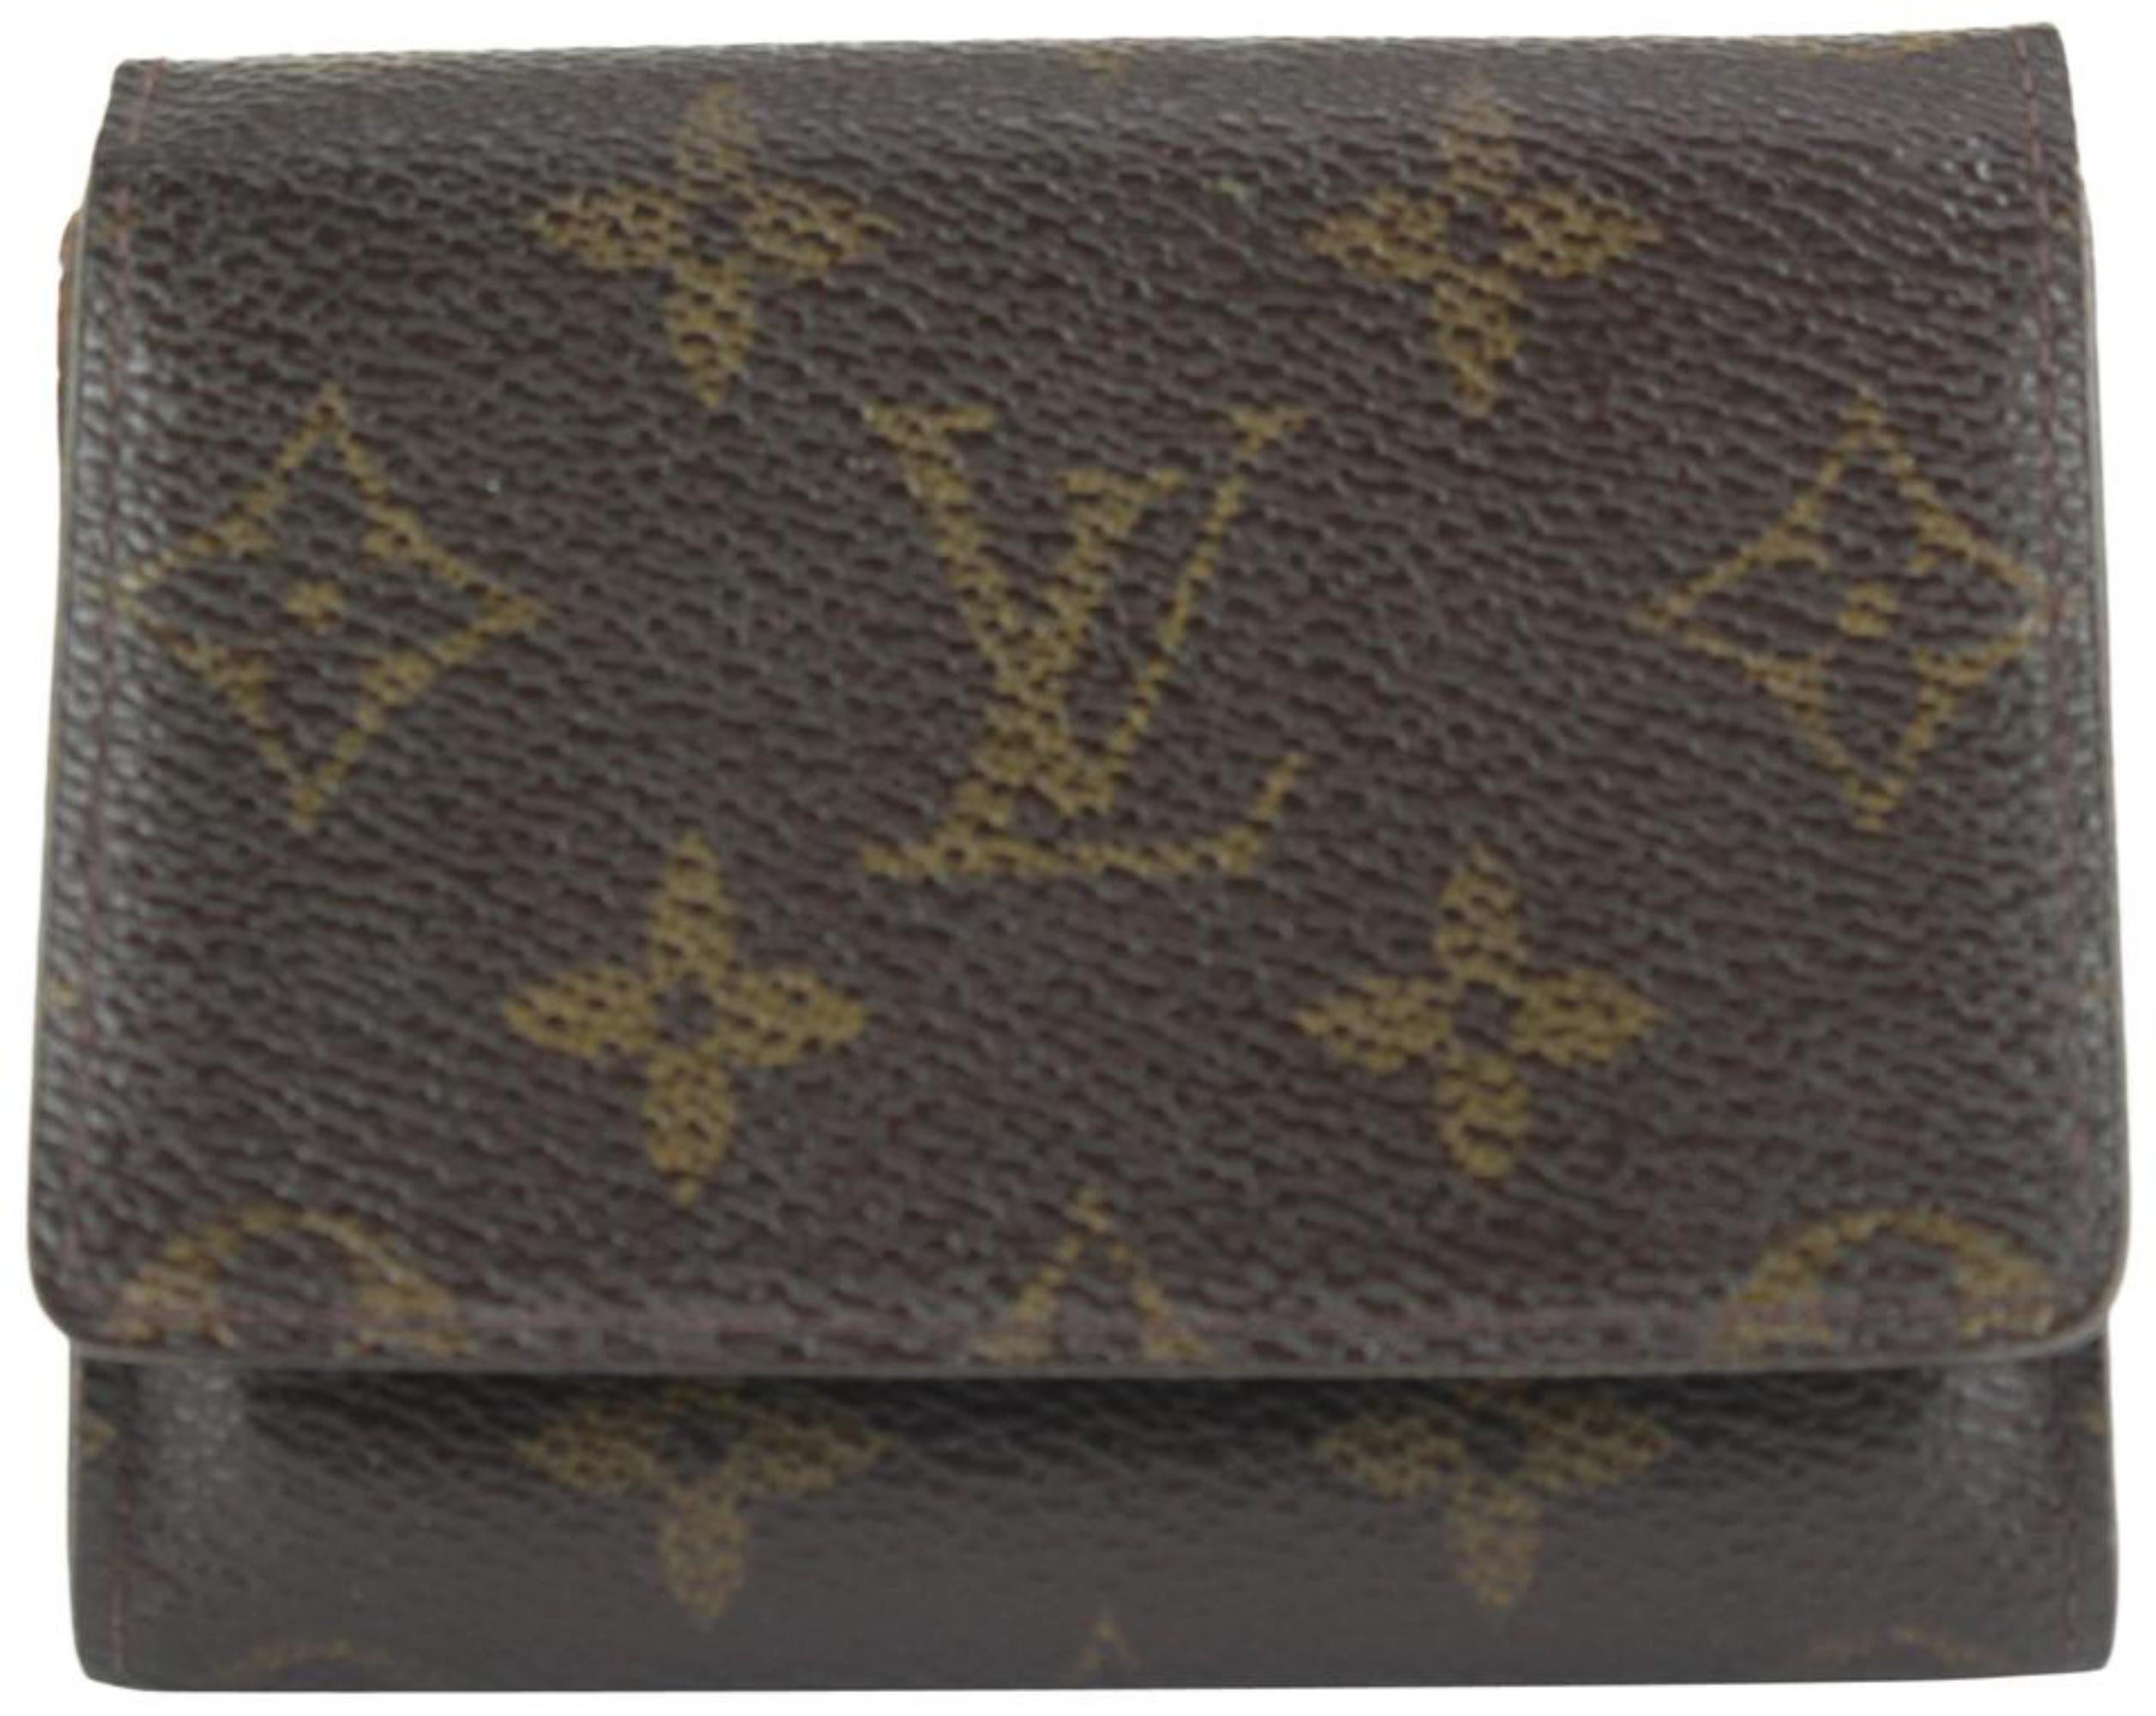 Louis Vuitton Monogram Coin Purse Change Pouch 8LZ1028 4